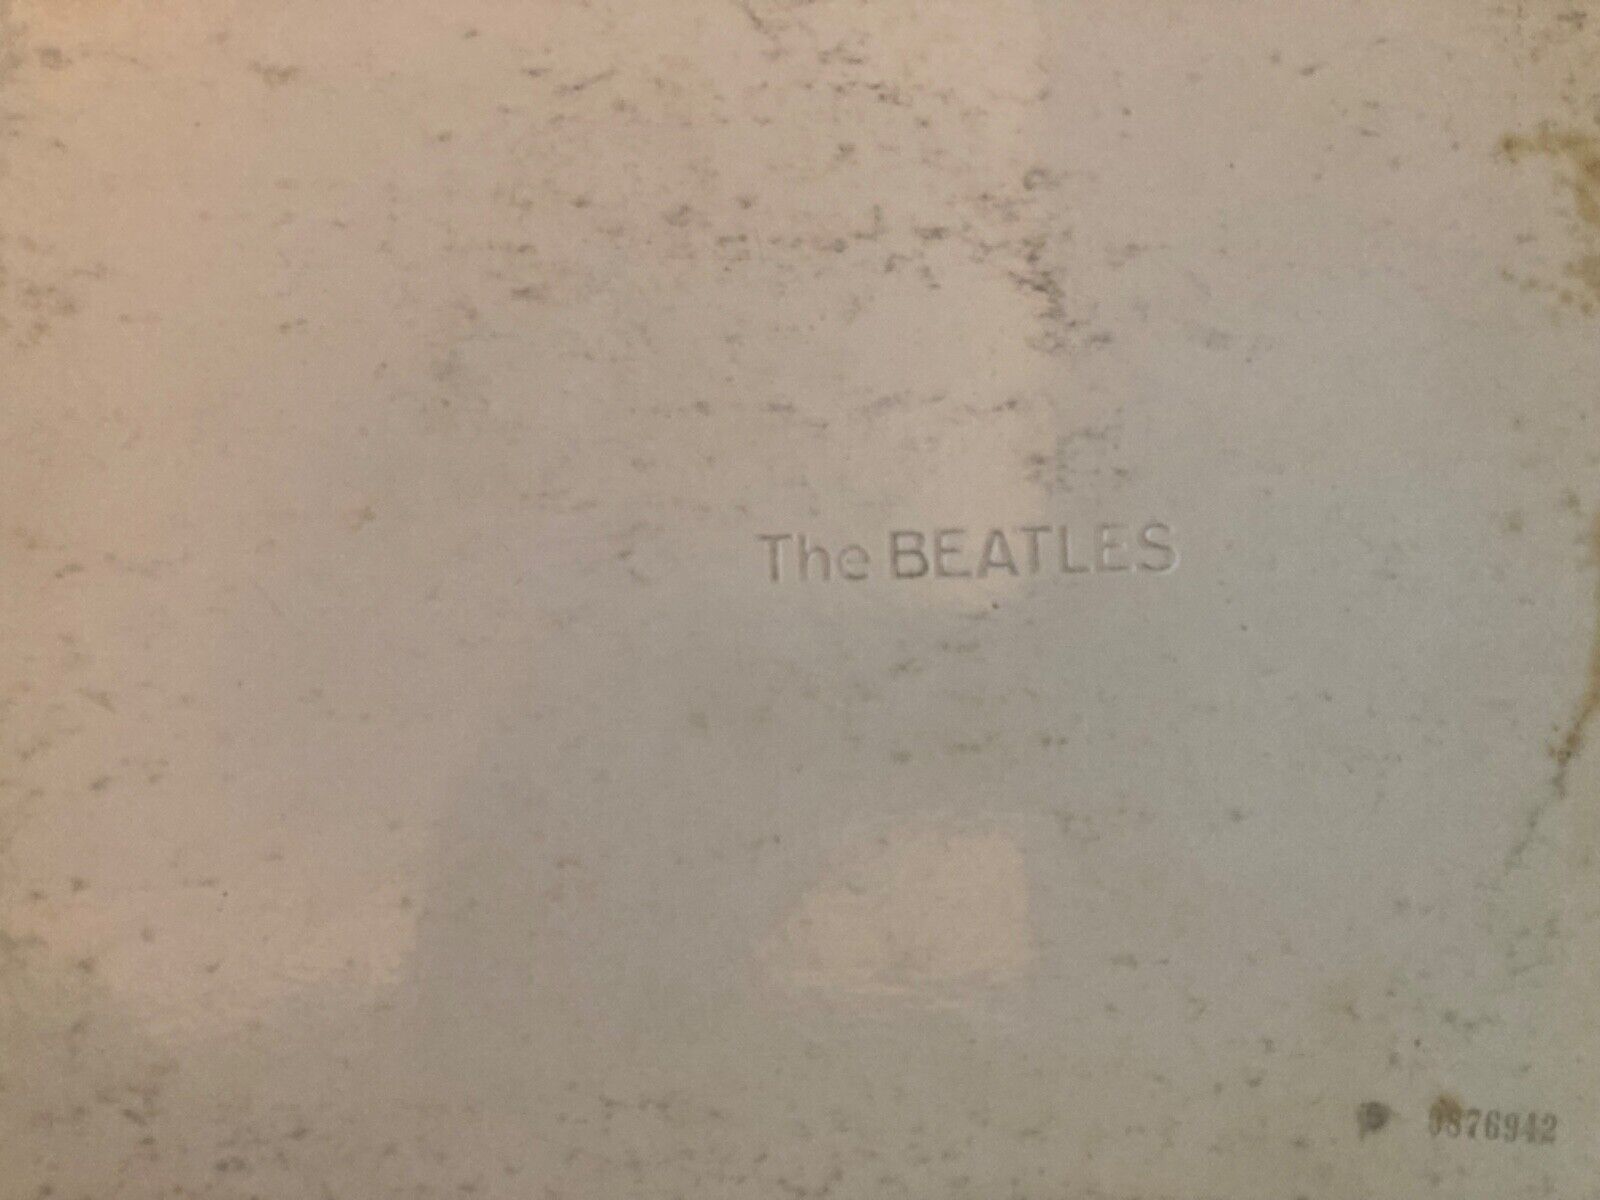 Beatles White Album '68 NICE Iconic RARE Vinyl ( 2) LPs Rocky Raccoon error